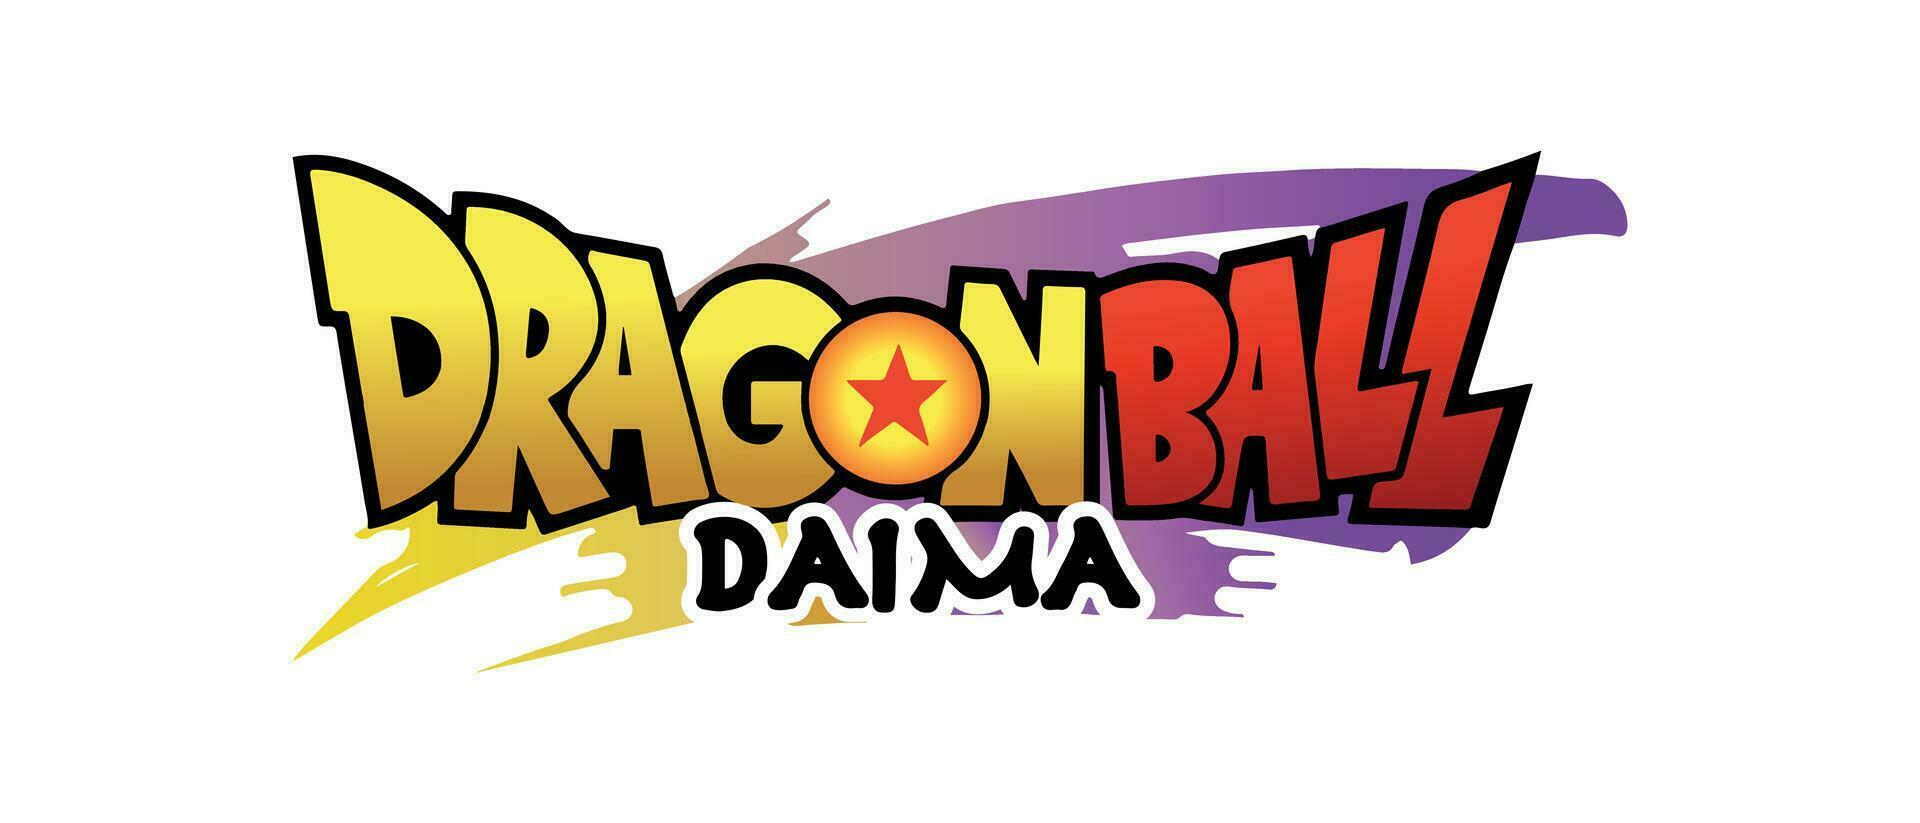 Dragon Ball Daima logo vector